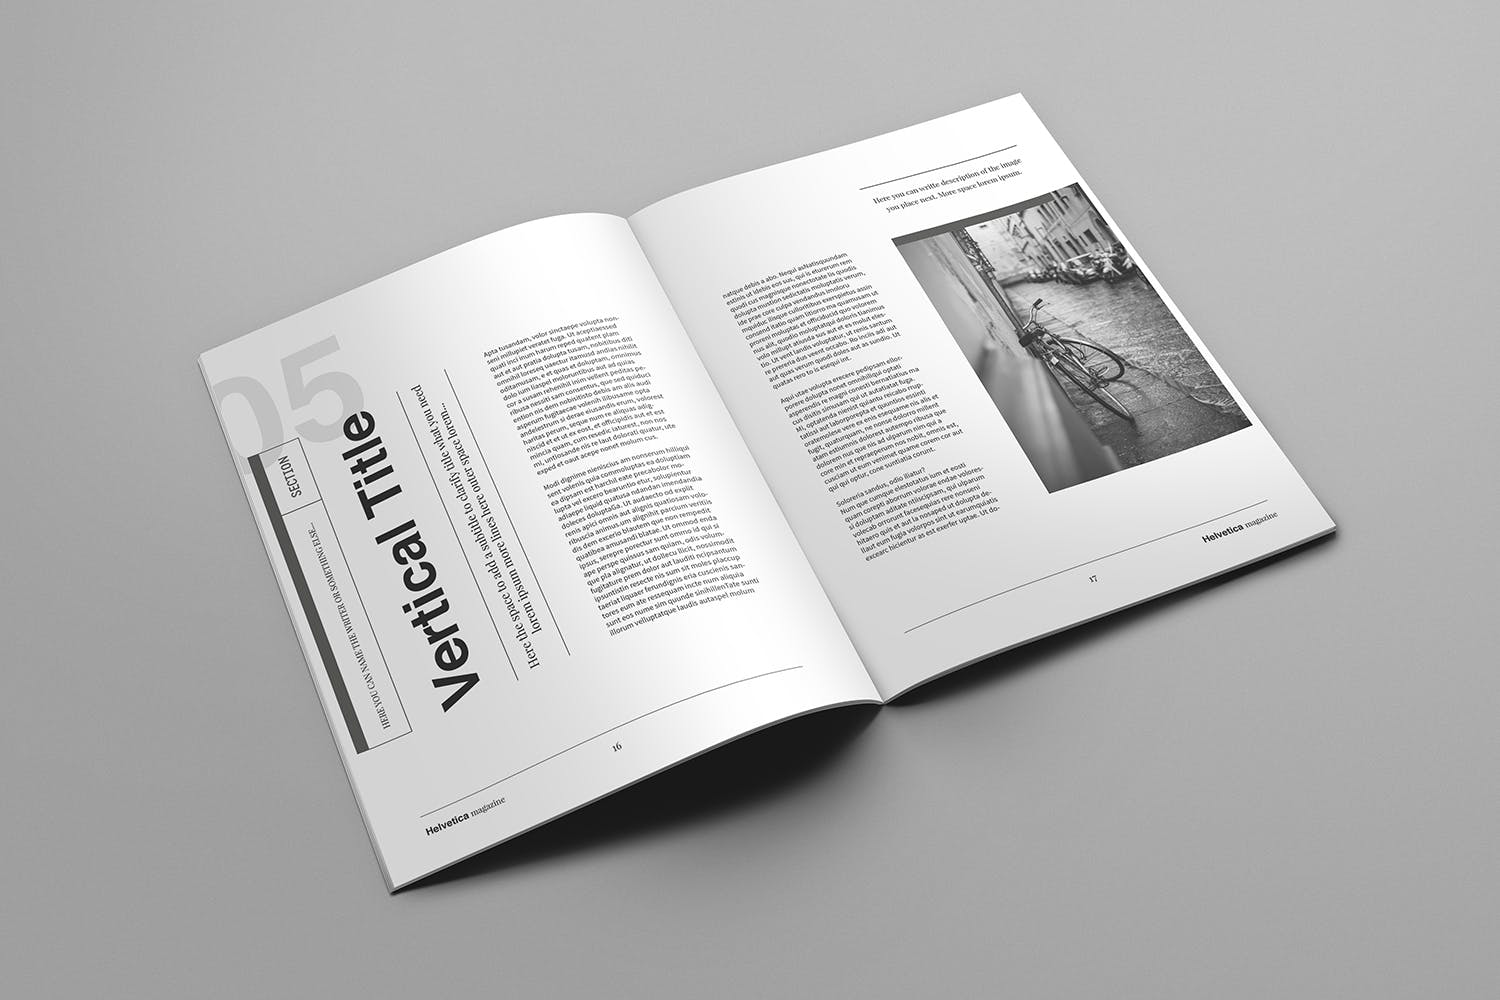 时尚行业产品评测杂志Indesign模板下载 Helvetica Magazine Indesign Template插图(9)